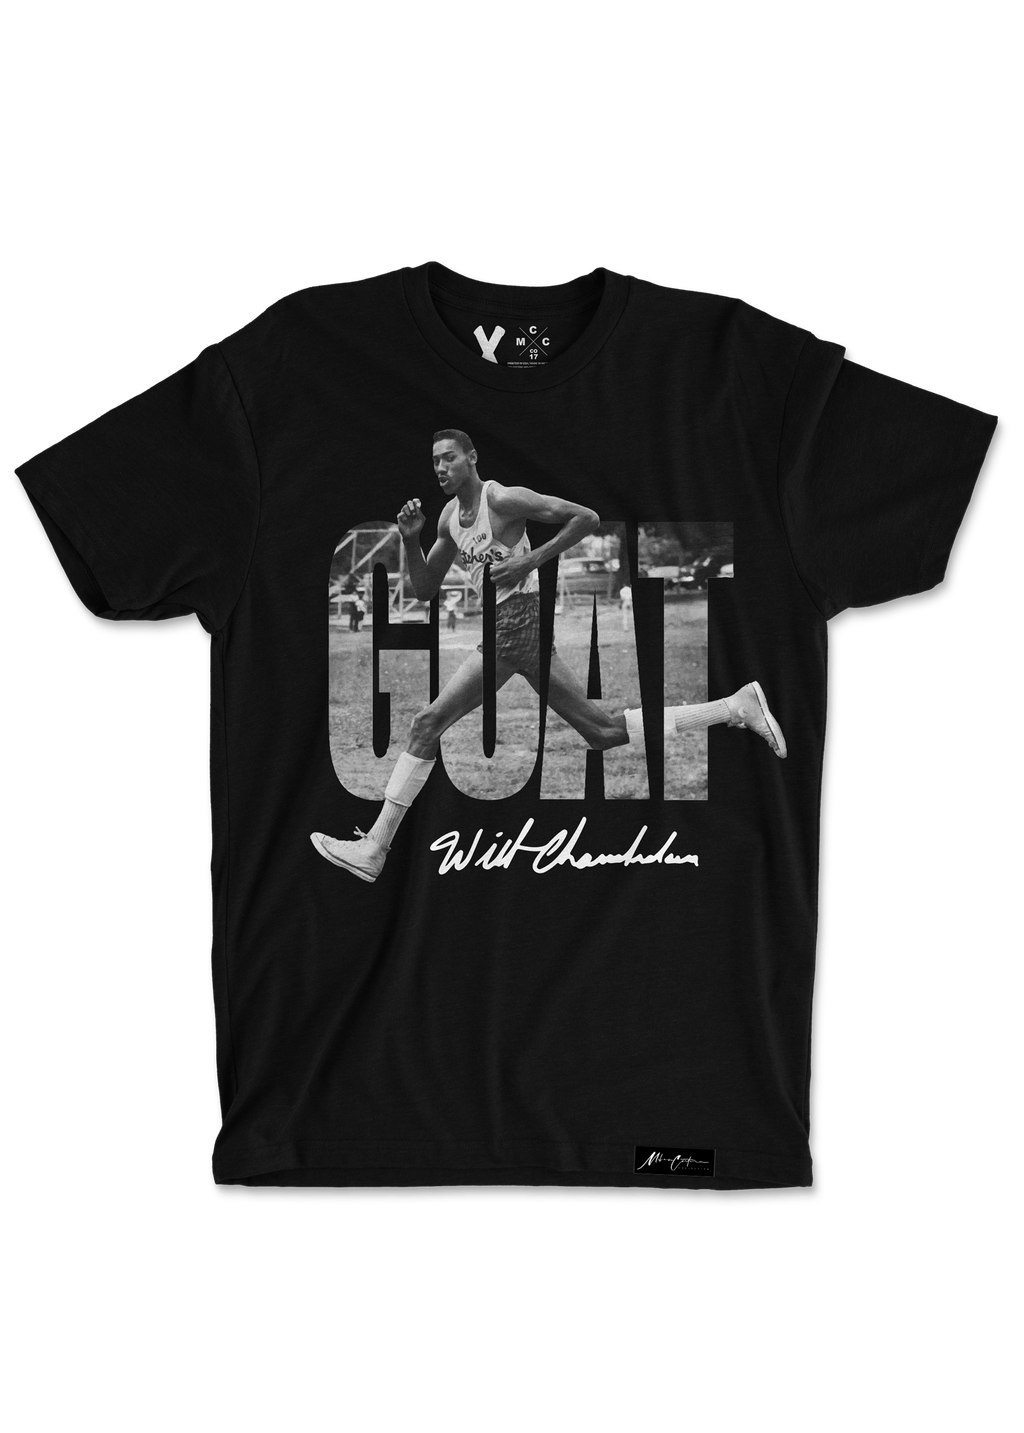 Miles Carter Designs Shirt 13 - Wilt Chamberlain